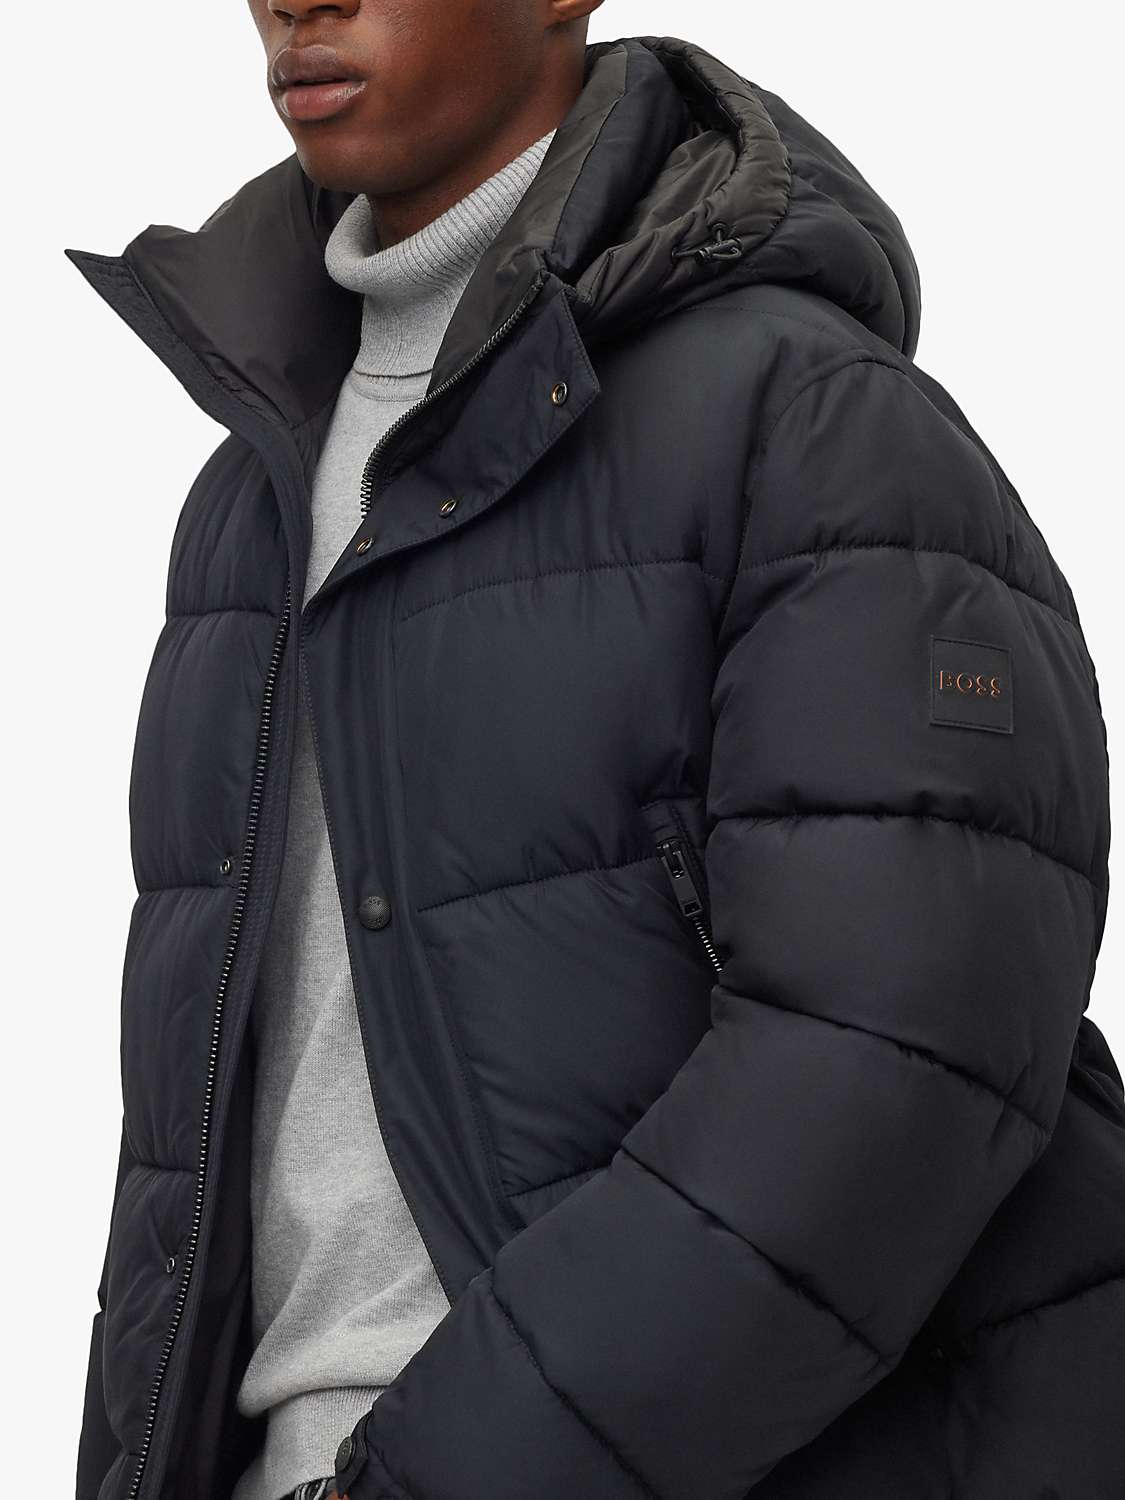 Buy BOSS Omaris Hooded Puffer Jacket, Black Online at johnlewis.com